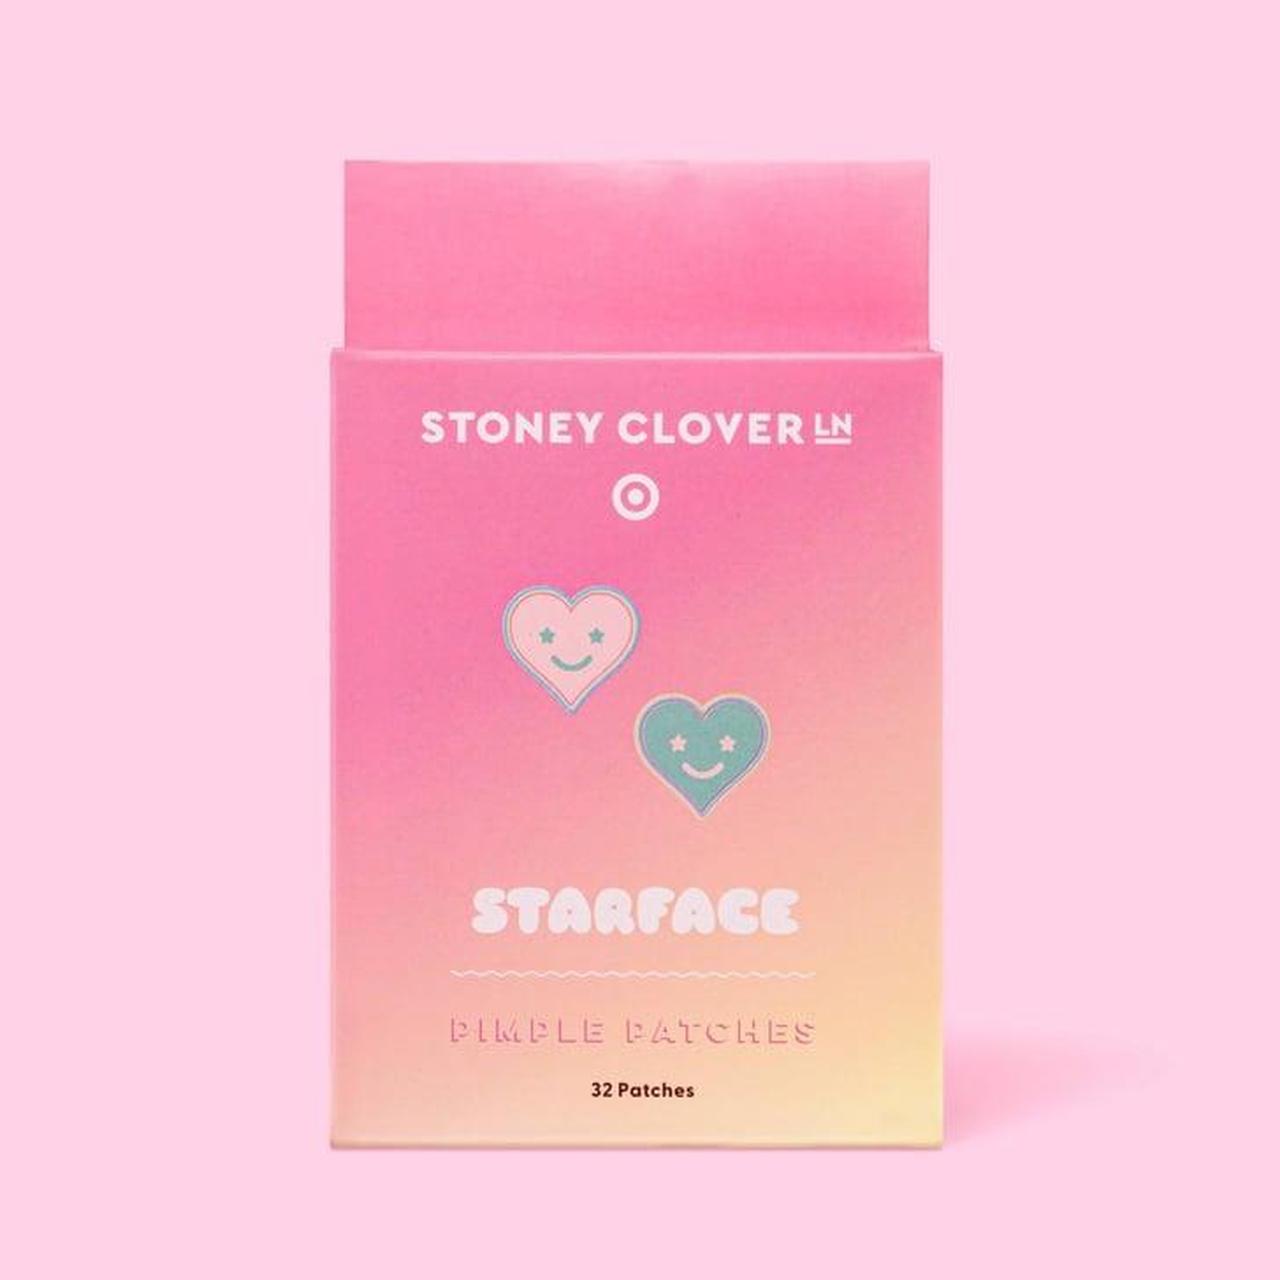 Stoney clover haul bundle T ticket, T makeup pouch,... - Depop